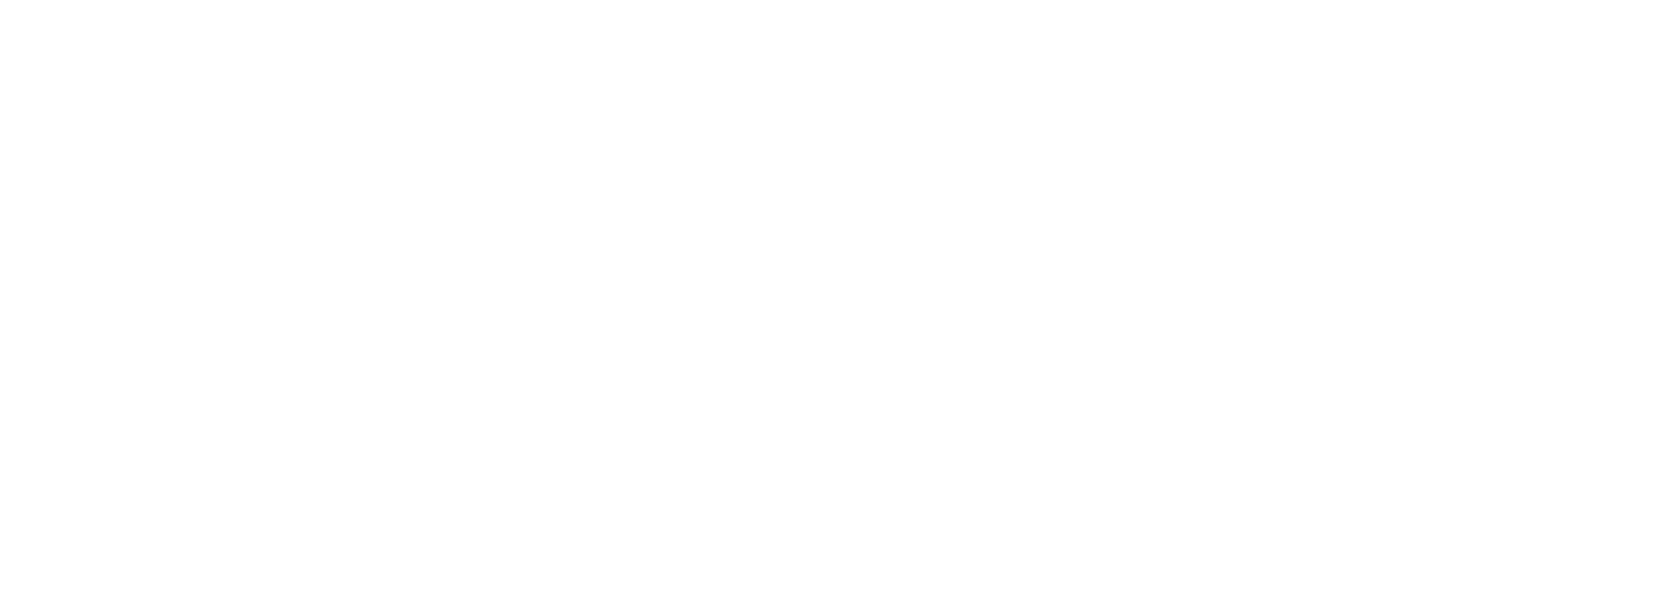 Пример ЭКГ сигнала, получаемого датчиком MYO v1.4.